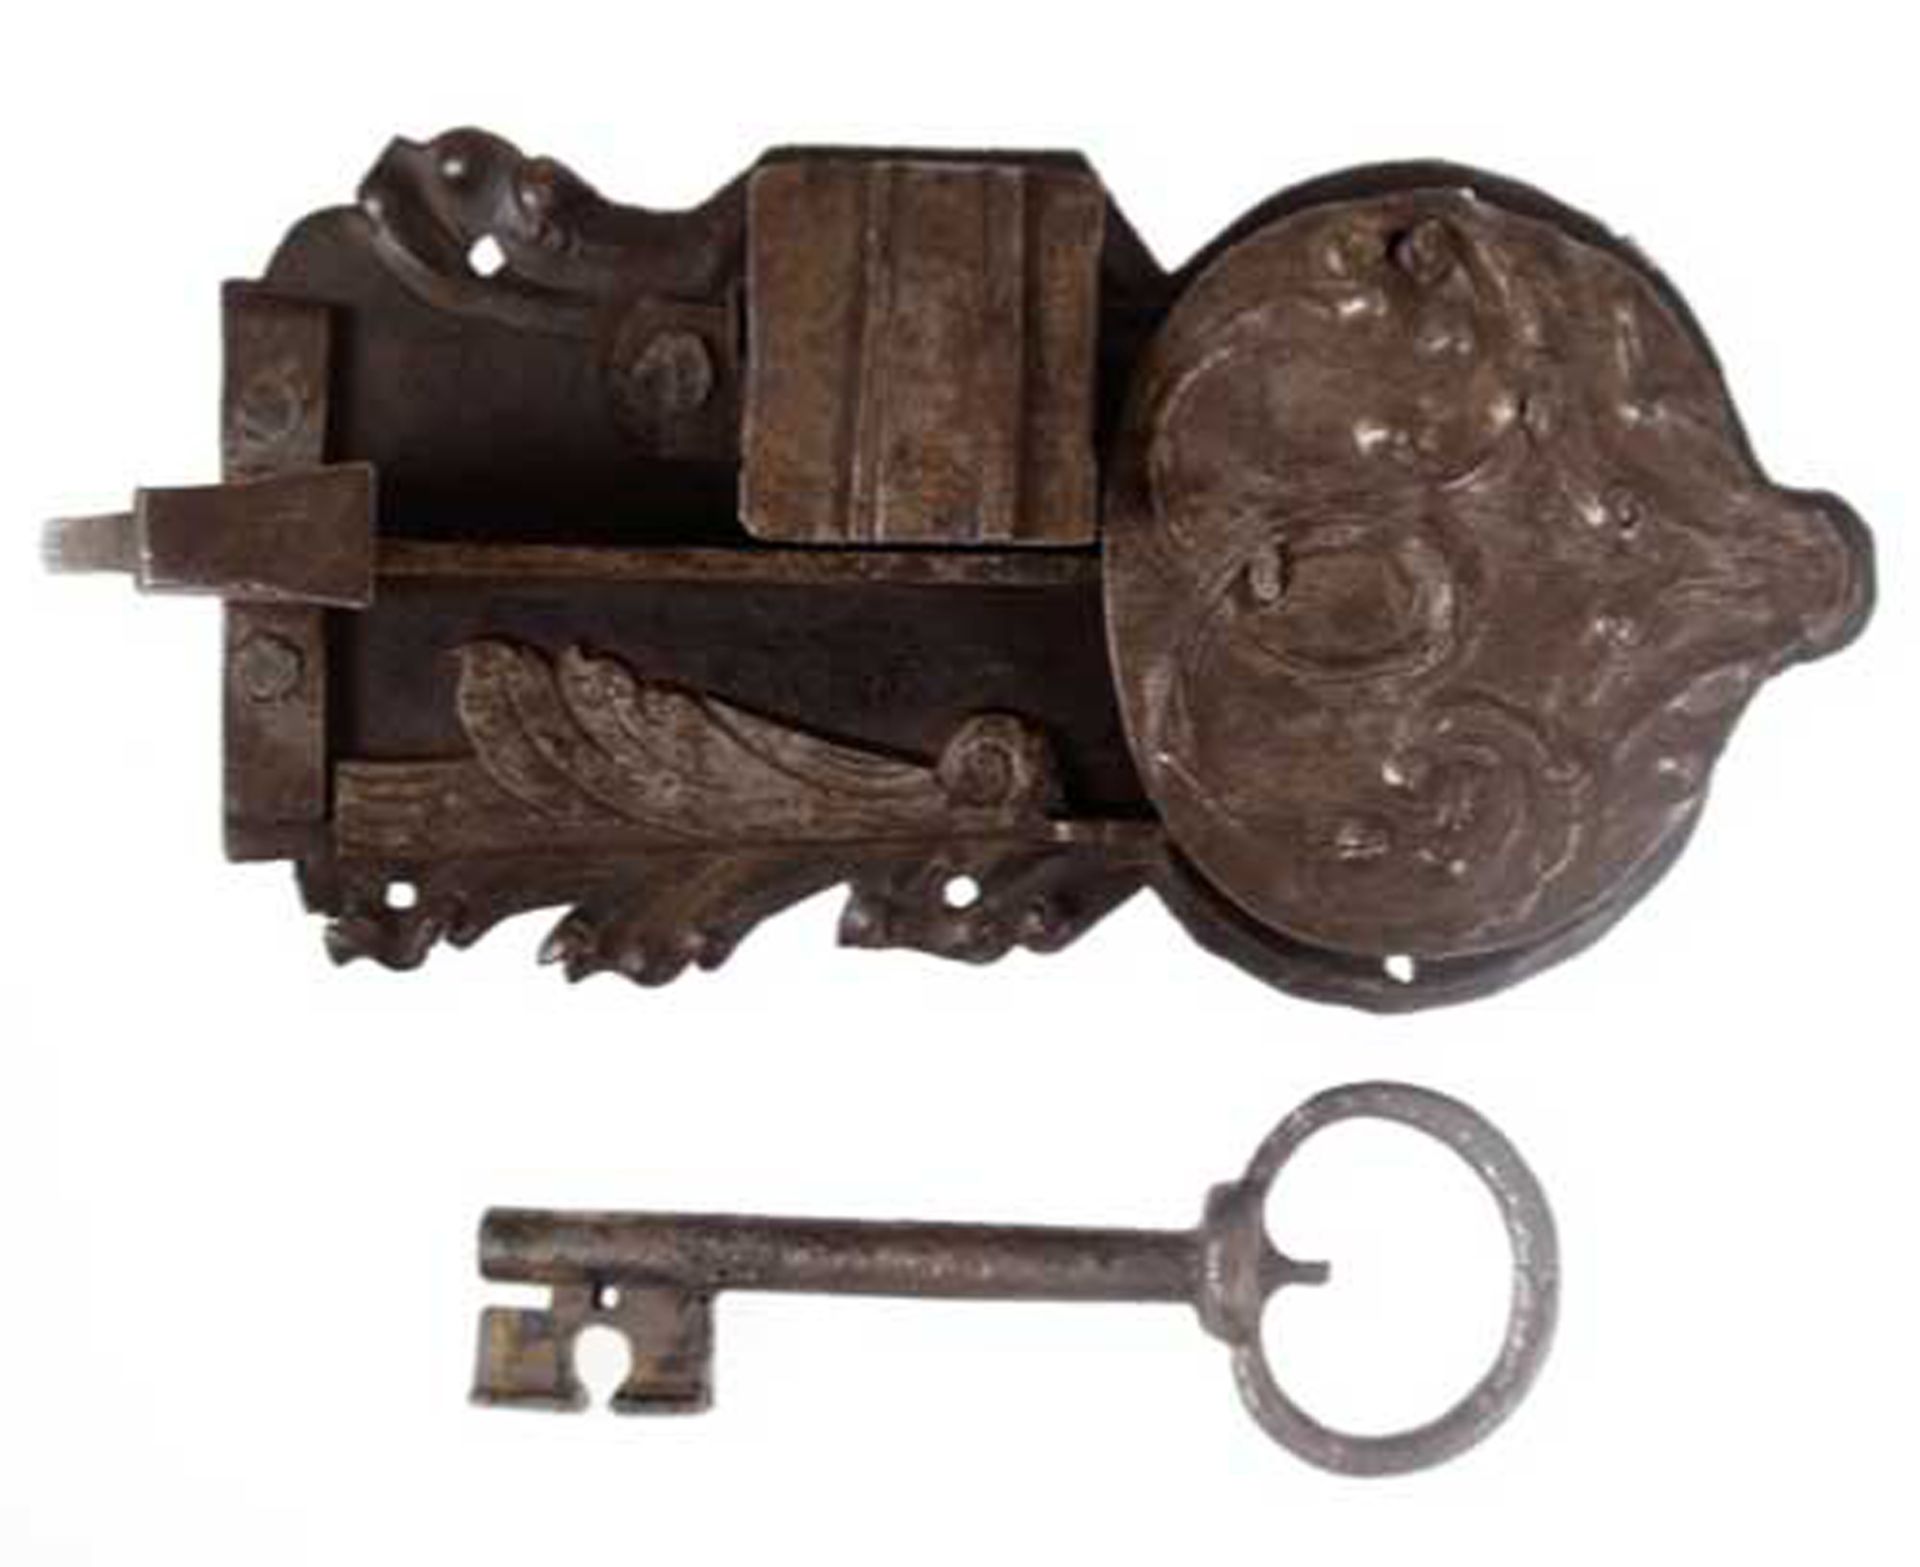 Kleines Barock-Schloss mit Original-Schlüssel, Eisen, rostig, Gebrauchspuren, Gesamtlänge: 22 cm, L